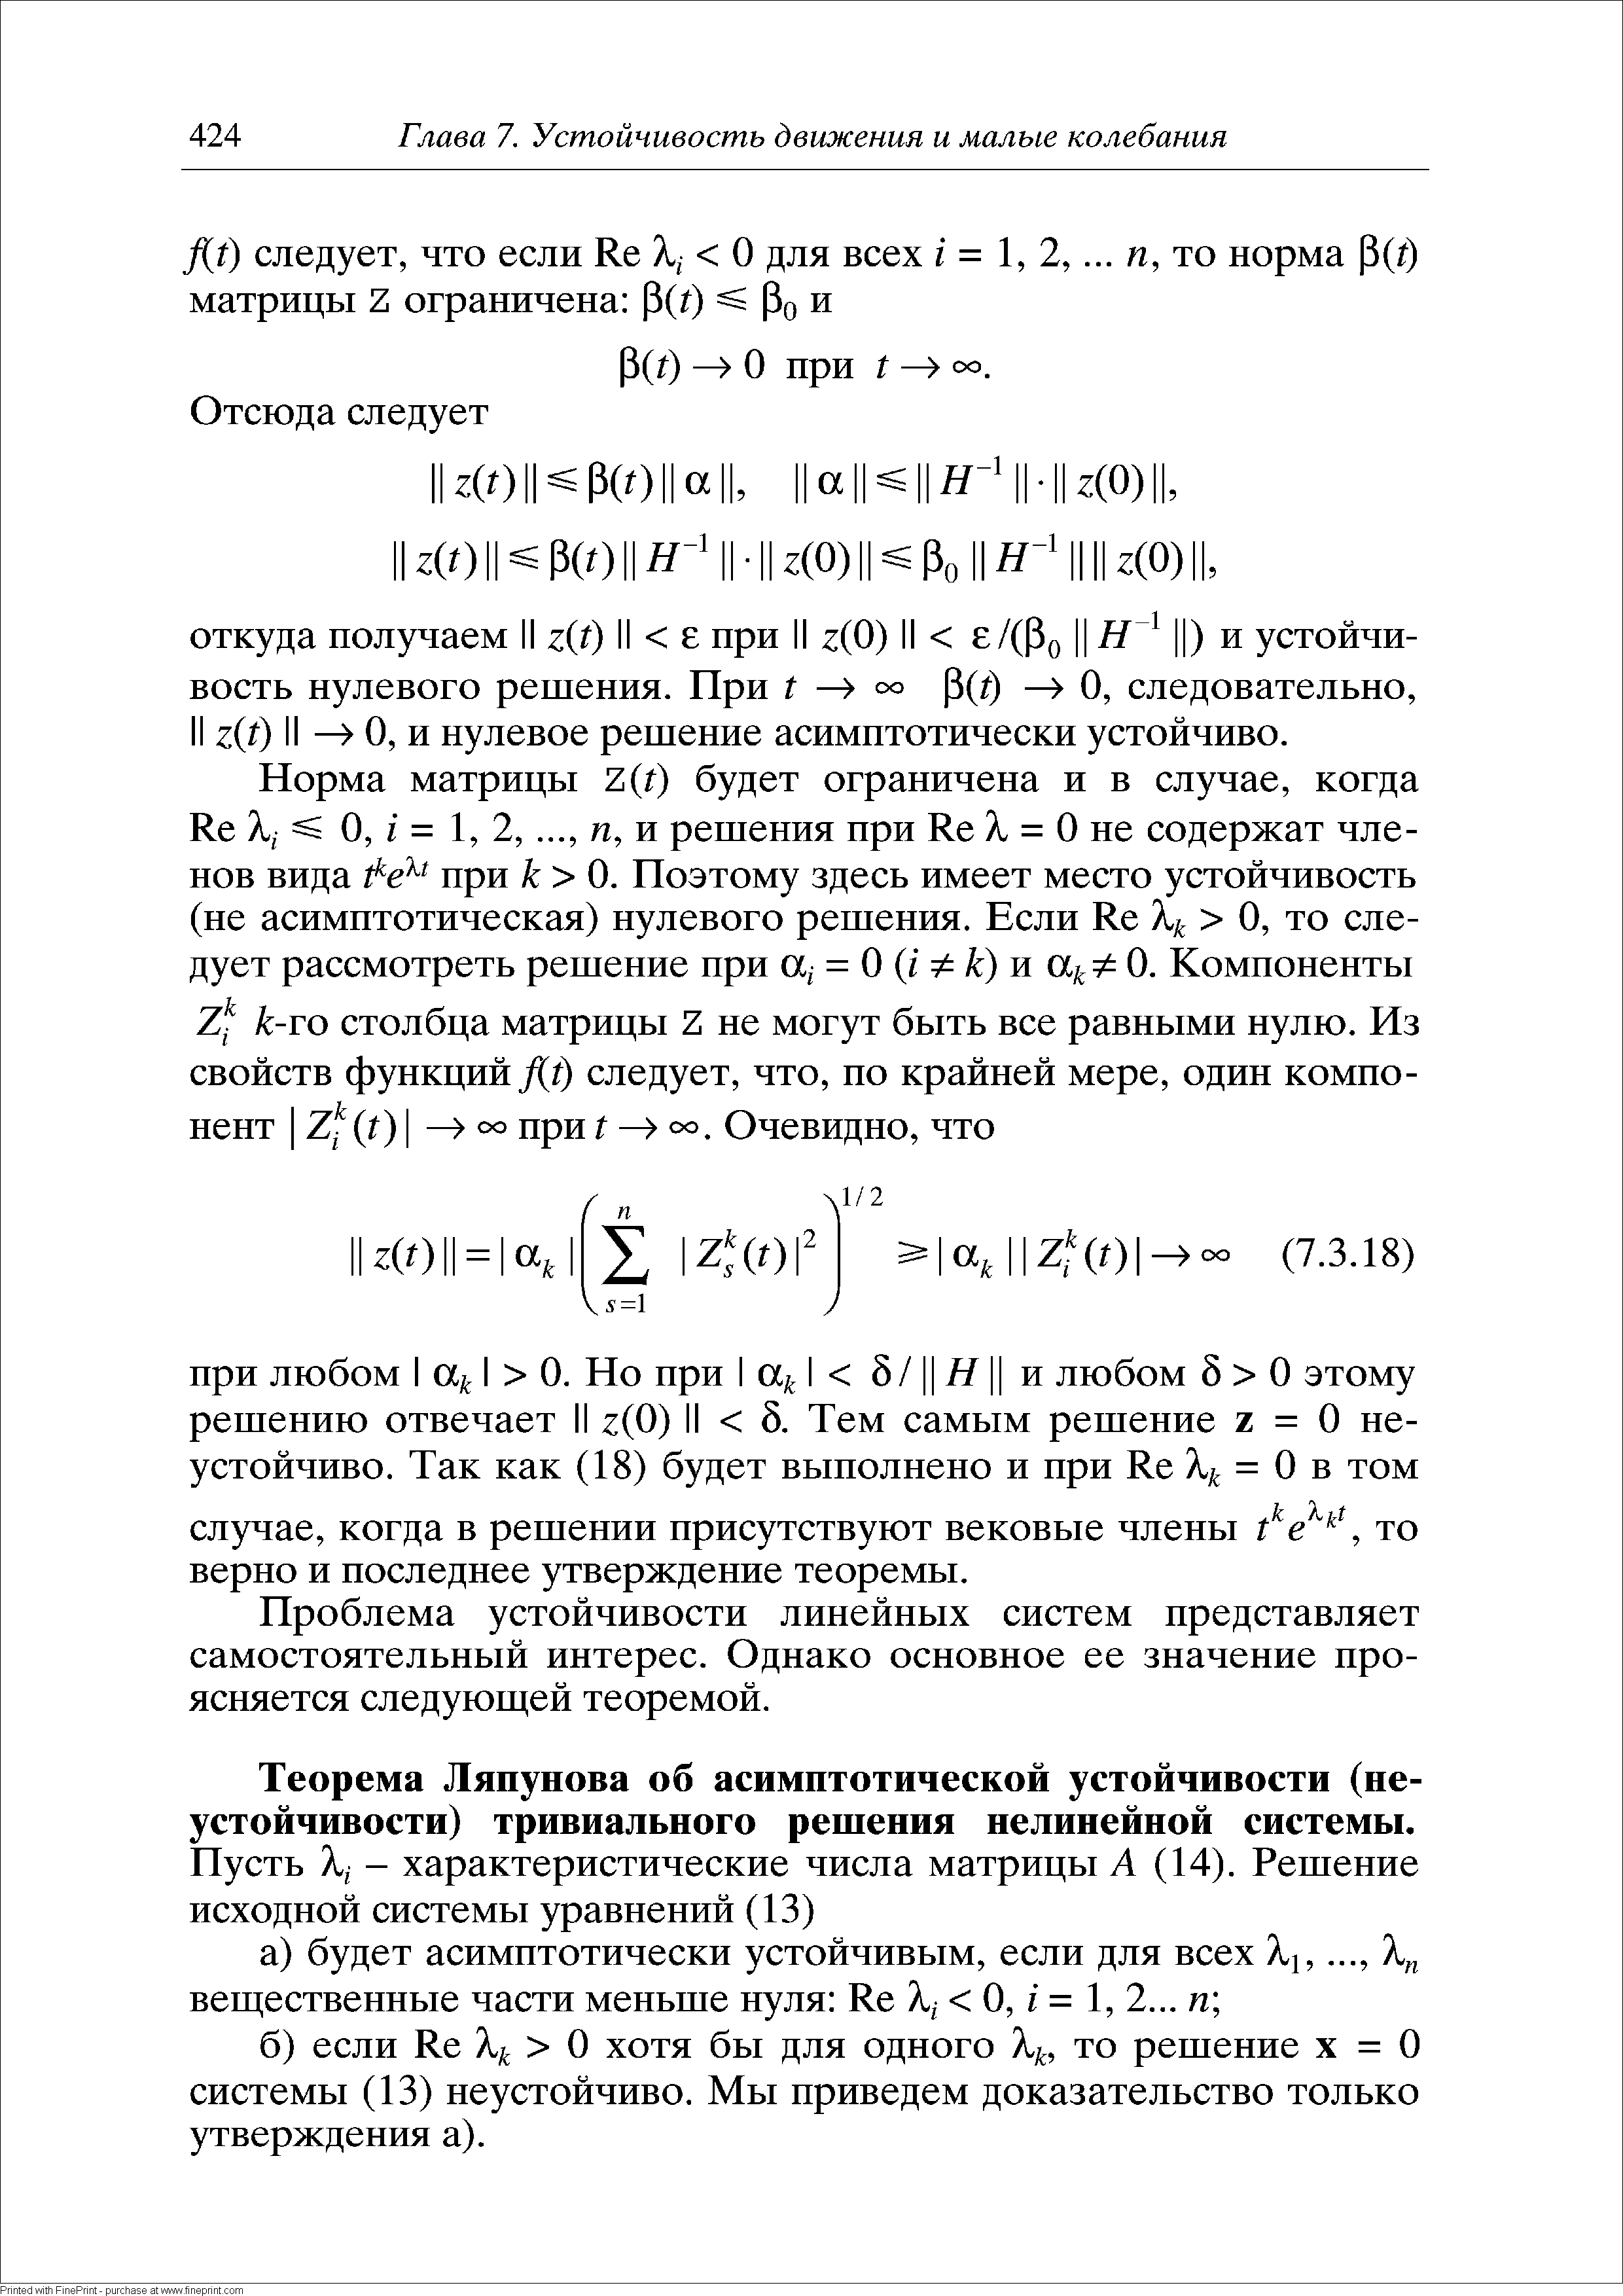 Теорема Ляпунова об асимптотической устойчивости (неустойчивости) тривиального решения нелинейной системы.
